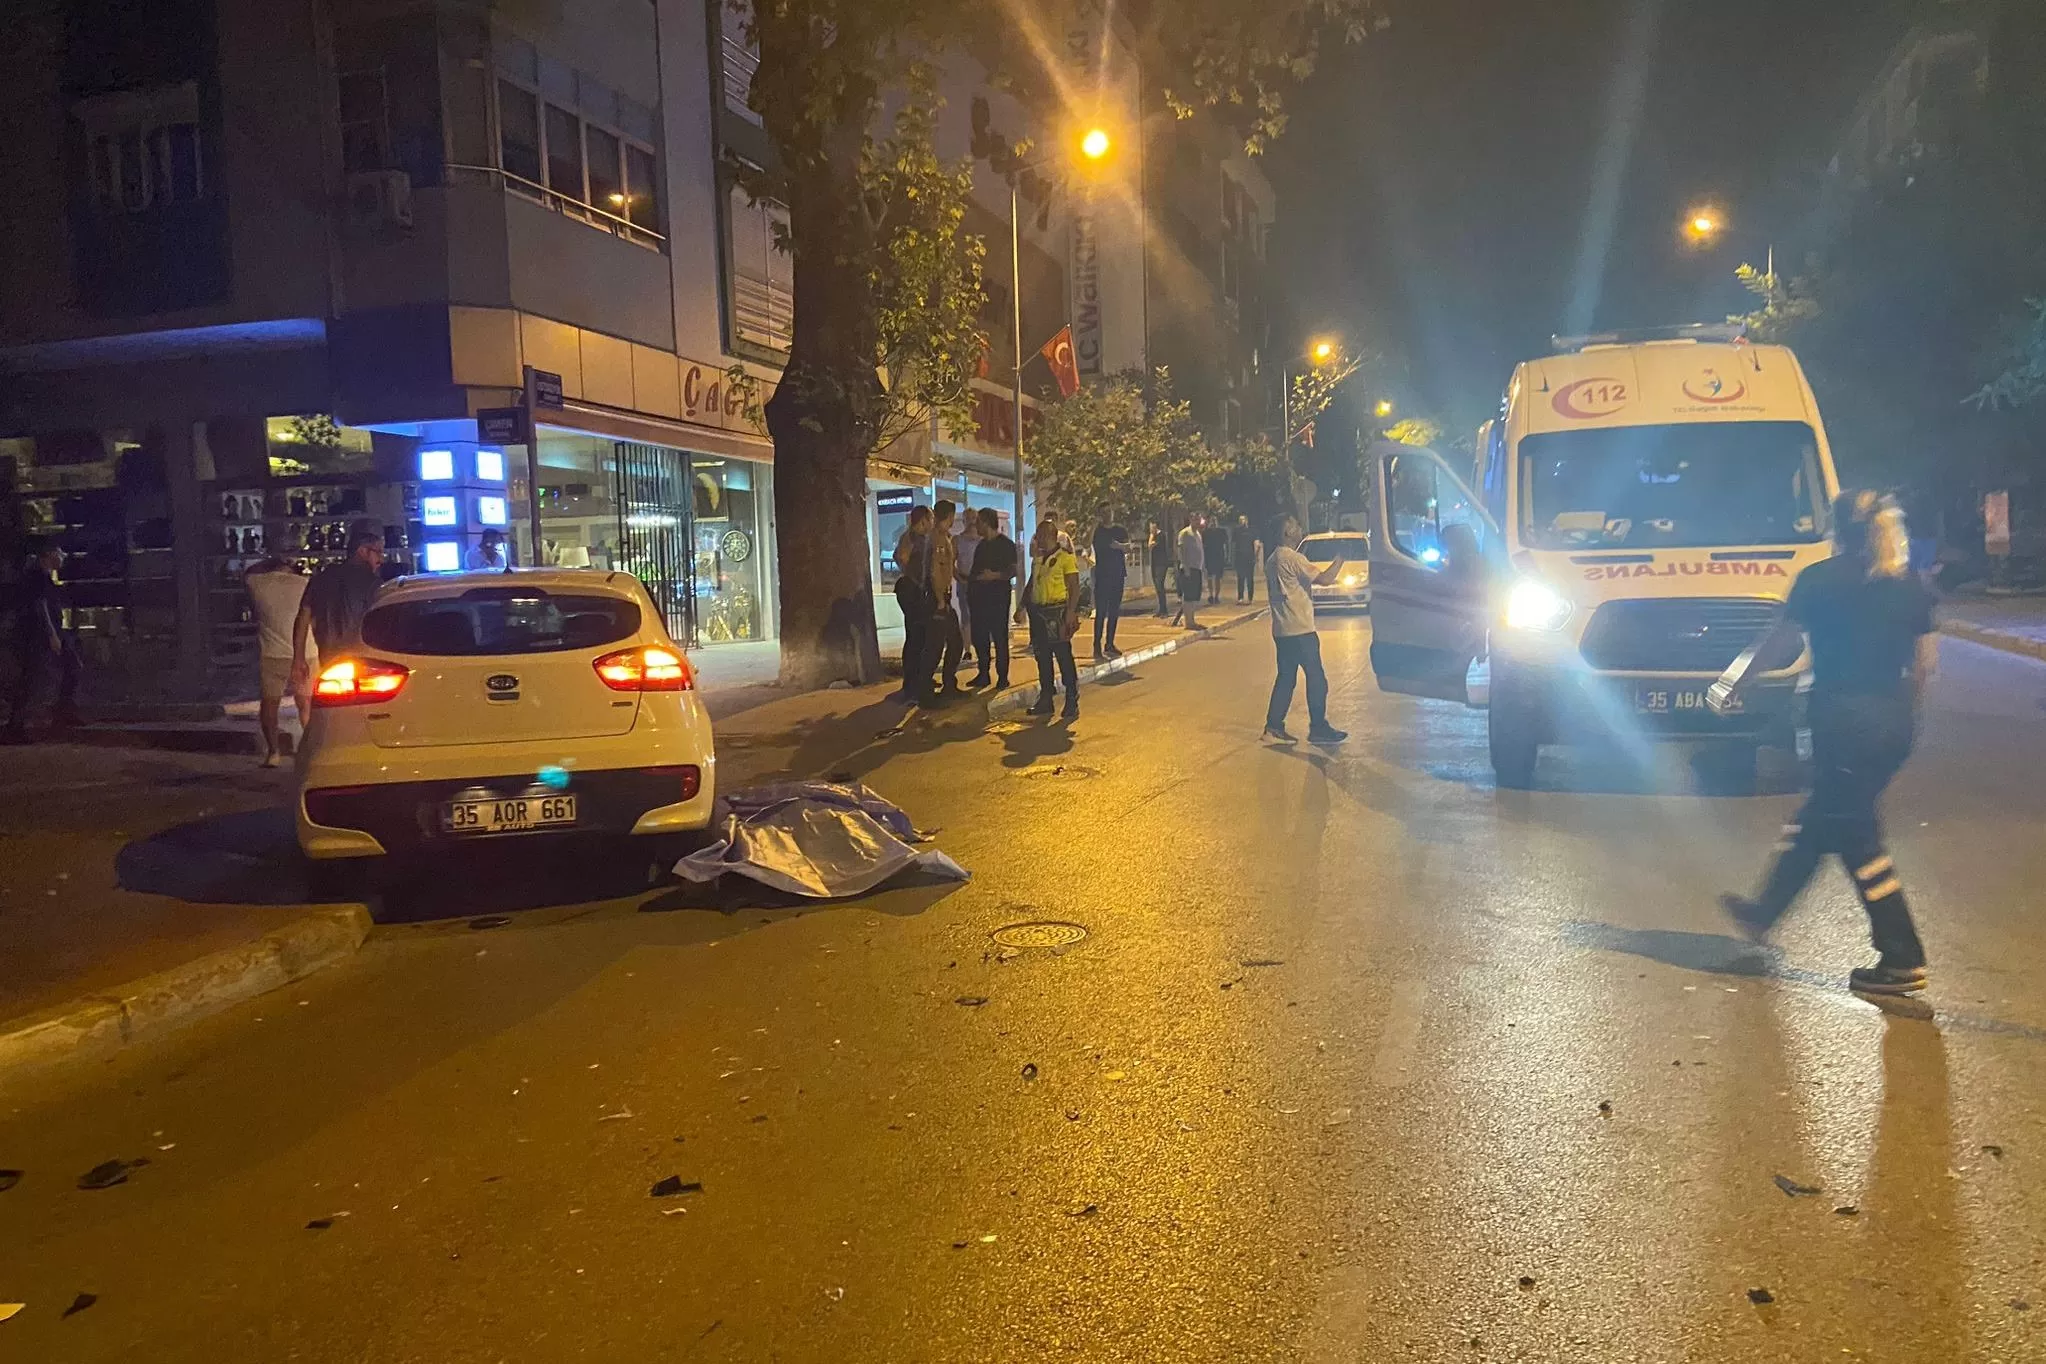 İzmir'in Tire ilçesinde meydana gelen trafik kazasında 1 kişi öldü, 1 kişi de yaralandı.